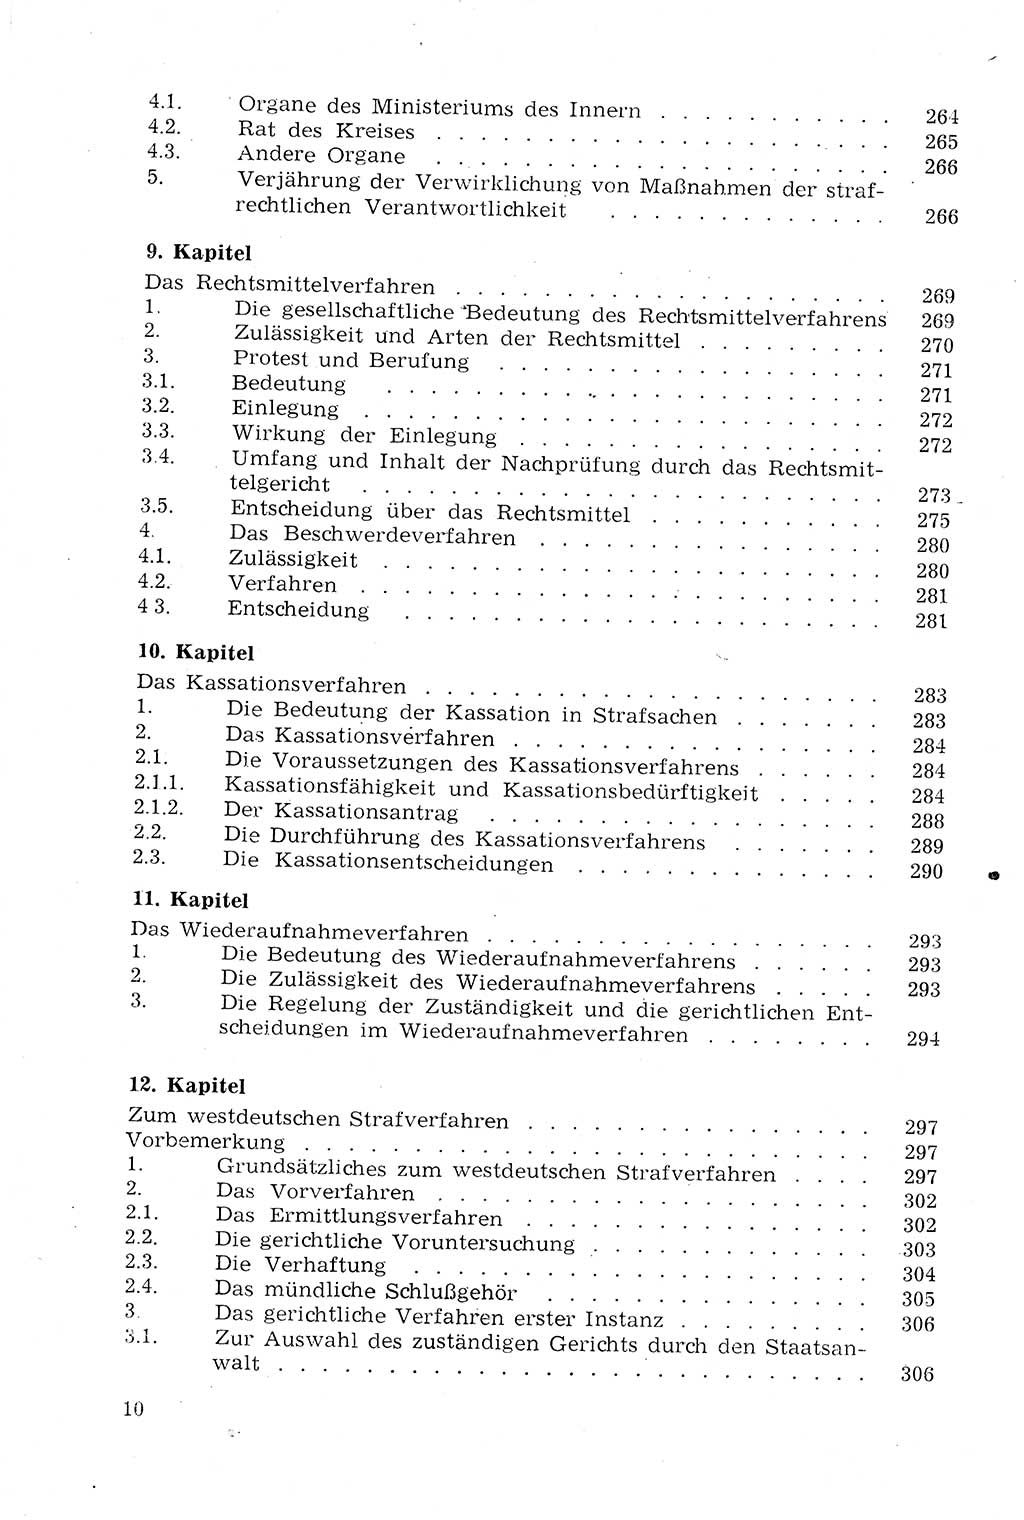 StrafprozeÃŸrecht der DDR (Deutsche Demokratische Republik), Lehrmaterial 1969, Seite 10 (StrafprozeÃŸr. DDR Lehrmat. 1969, S. 10)